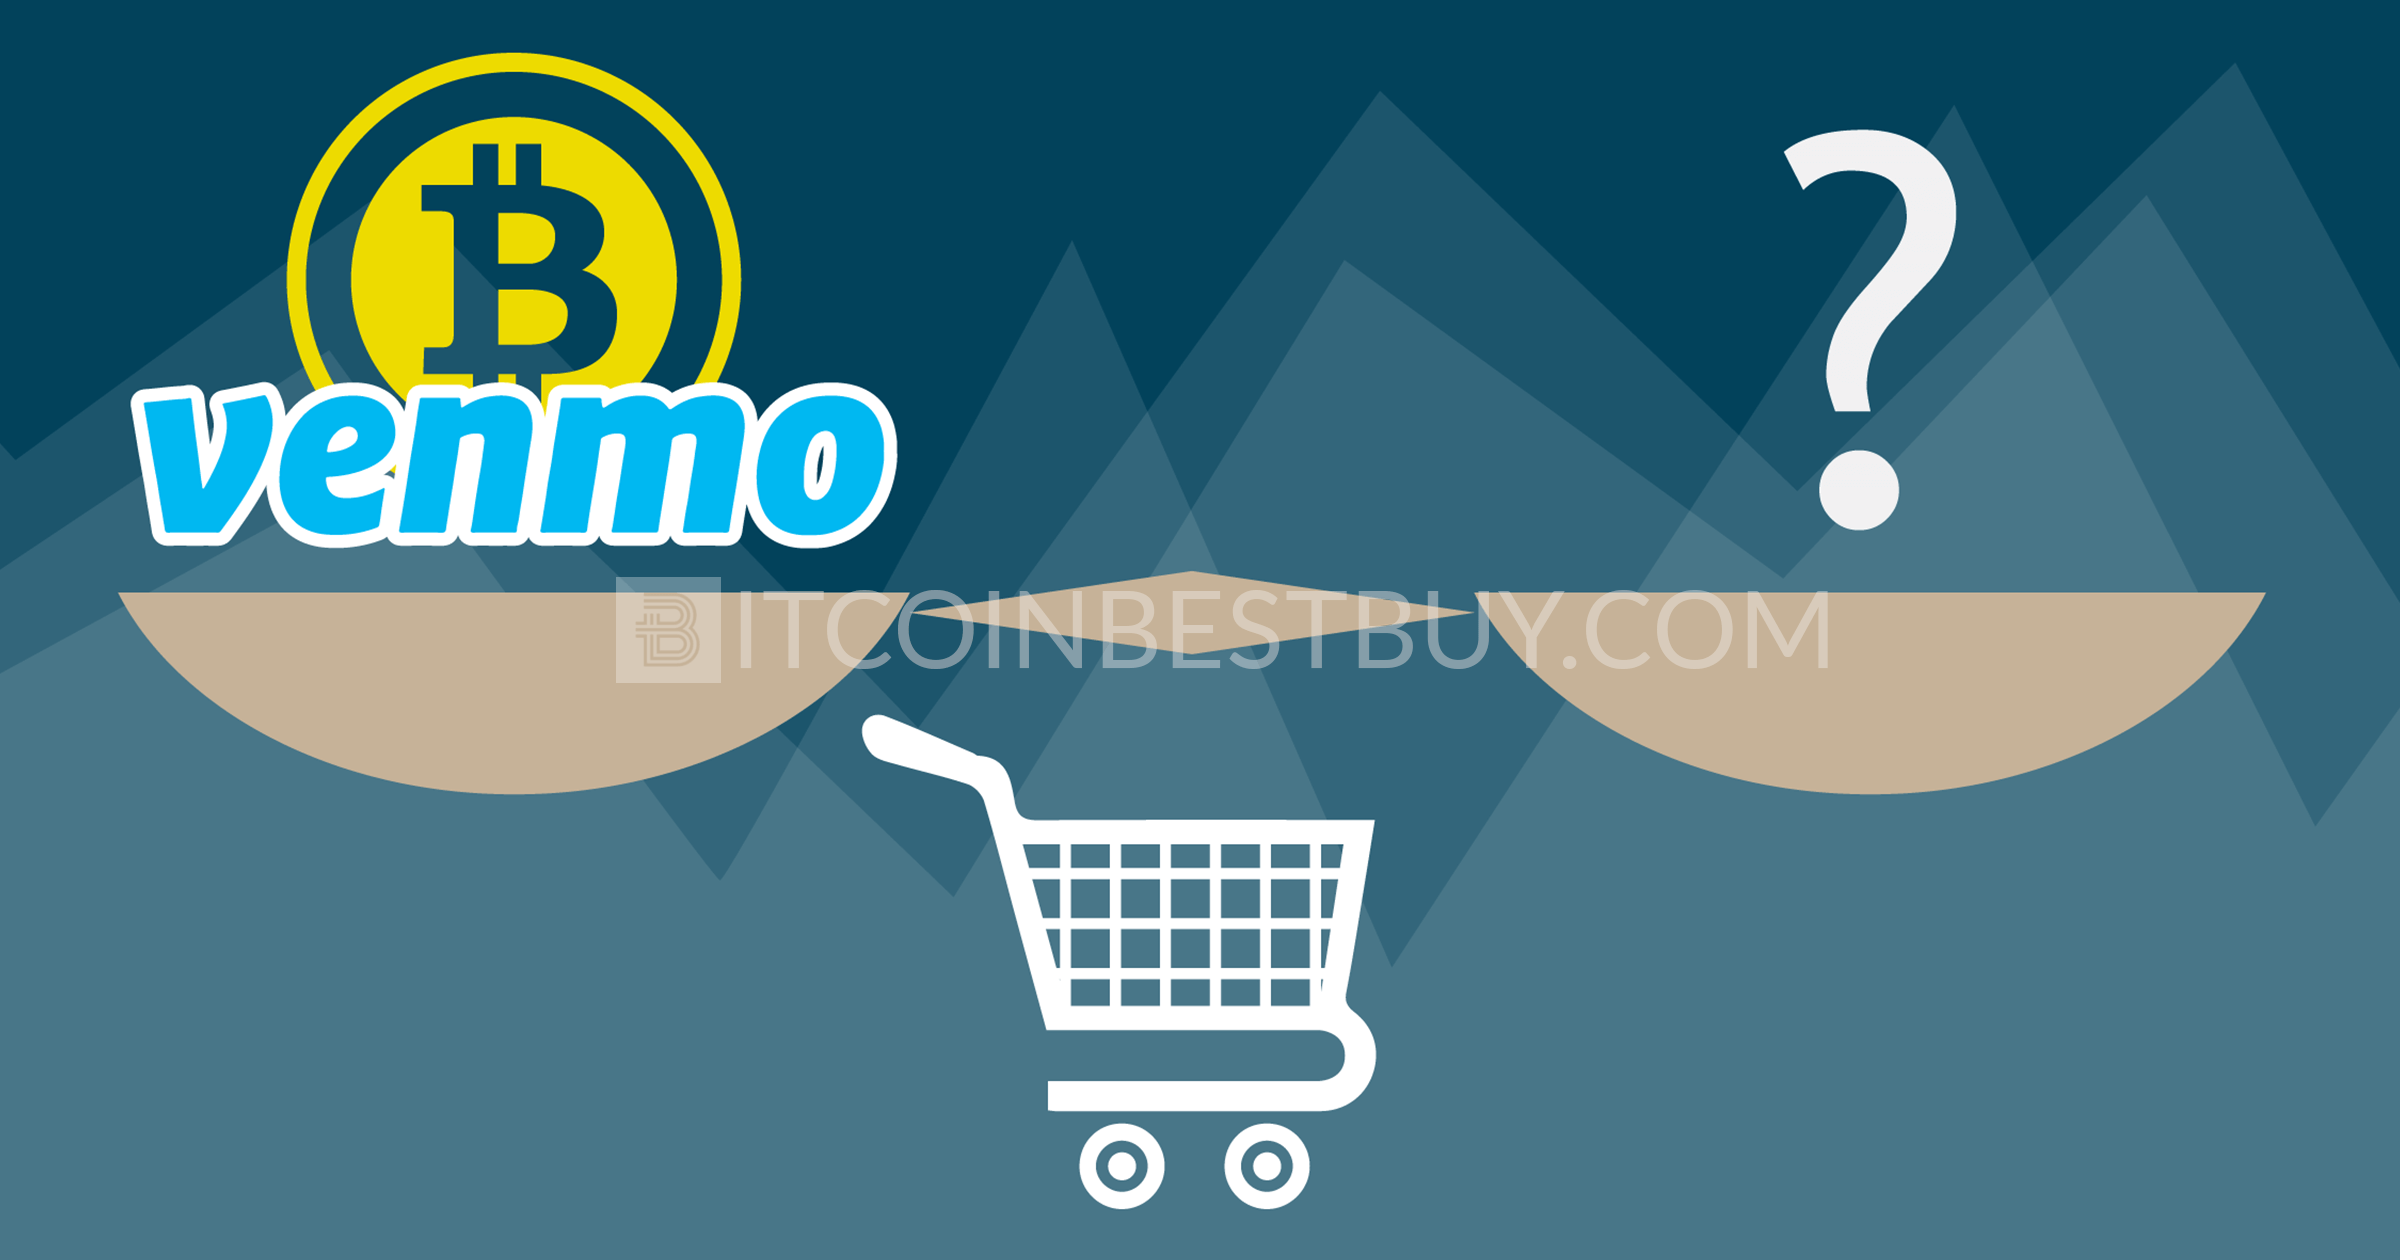 Kupowanie Bitcoina za pomocą Venmo: czy warto?